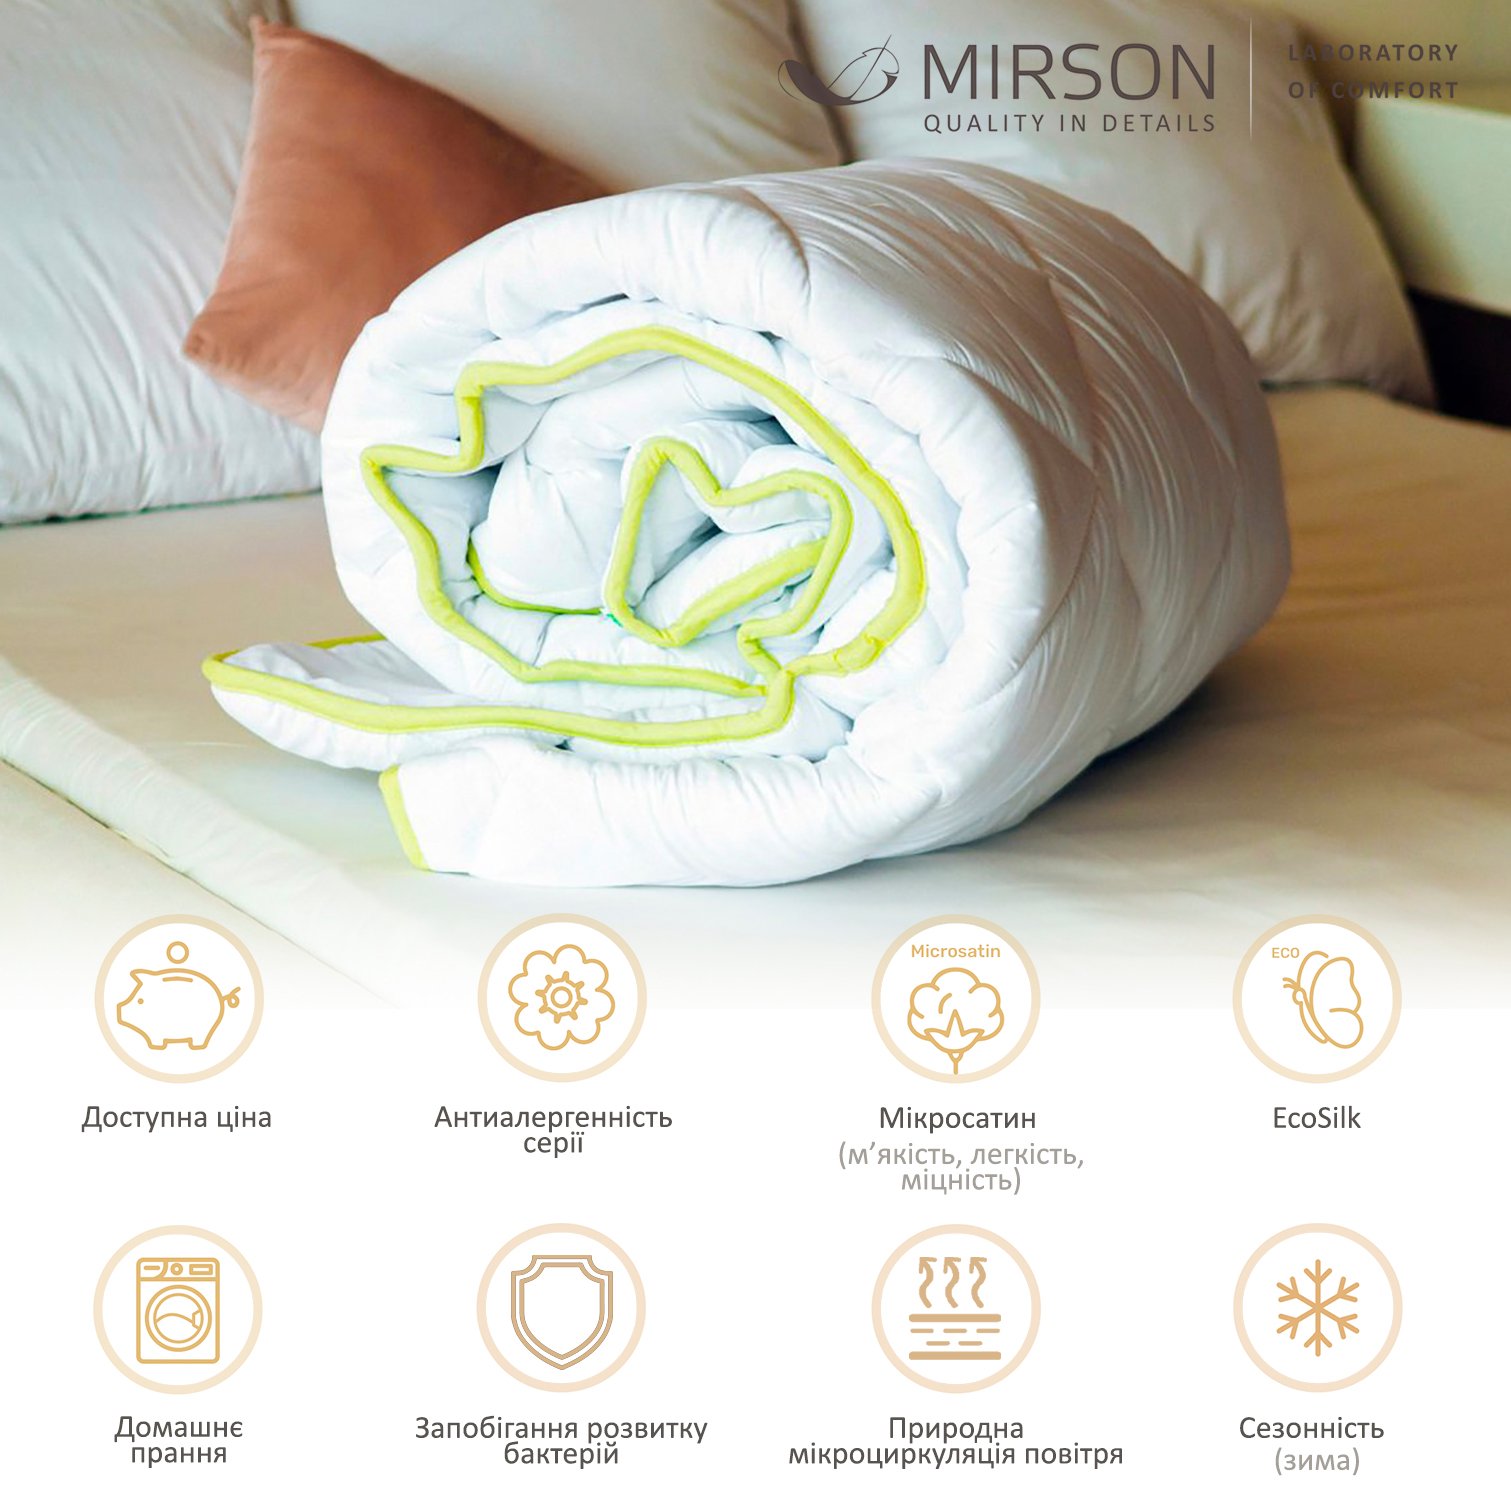 Одеяло антиаллергенное MirSon EcoSilk №003, зимнее, 220x240 см, белое (13026608) - фото 4